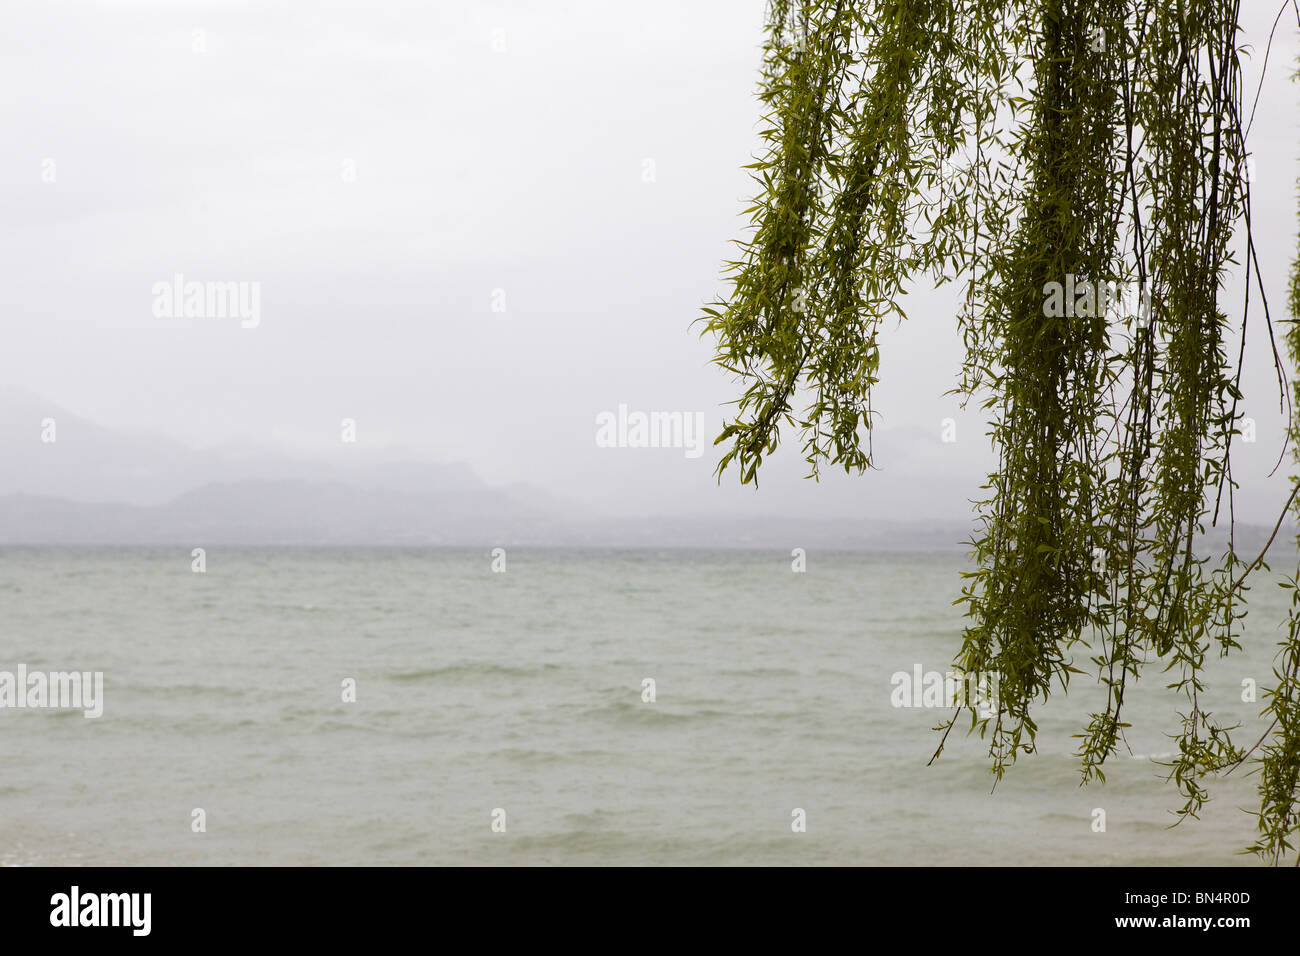 Saule pleureur sur les rives du lac de Garde, Italie Banque D'Images